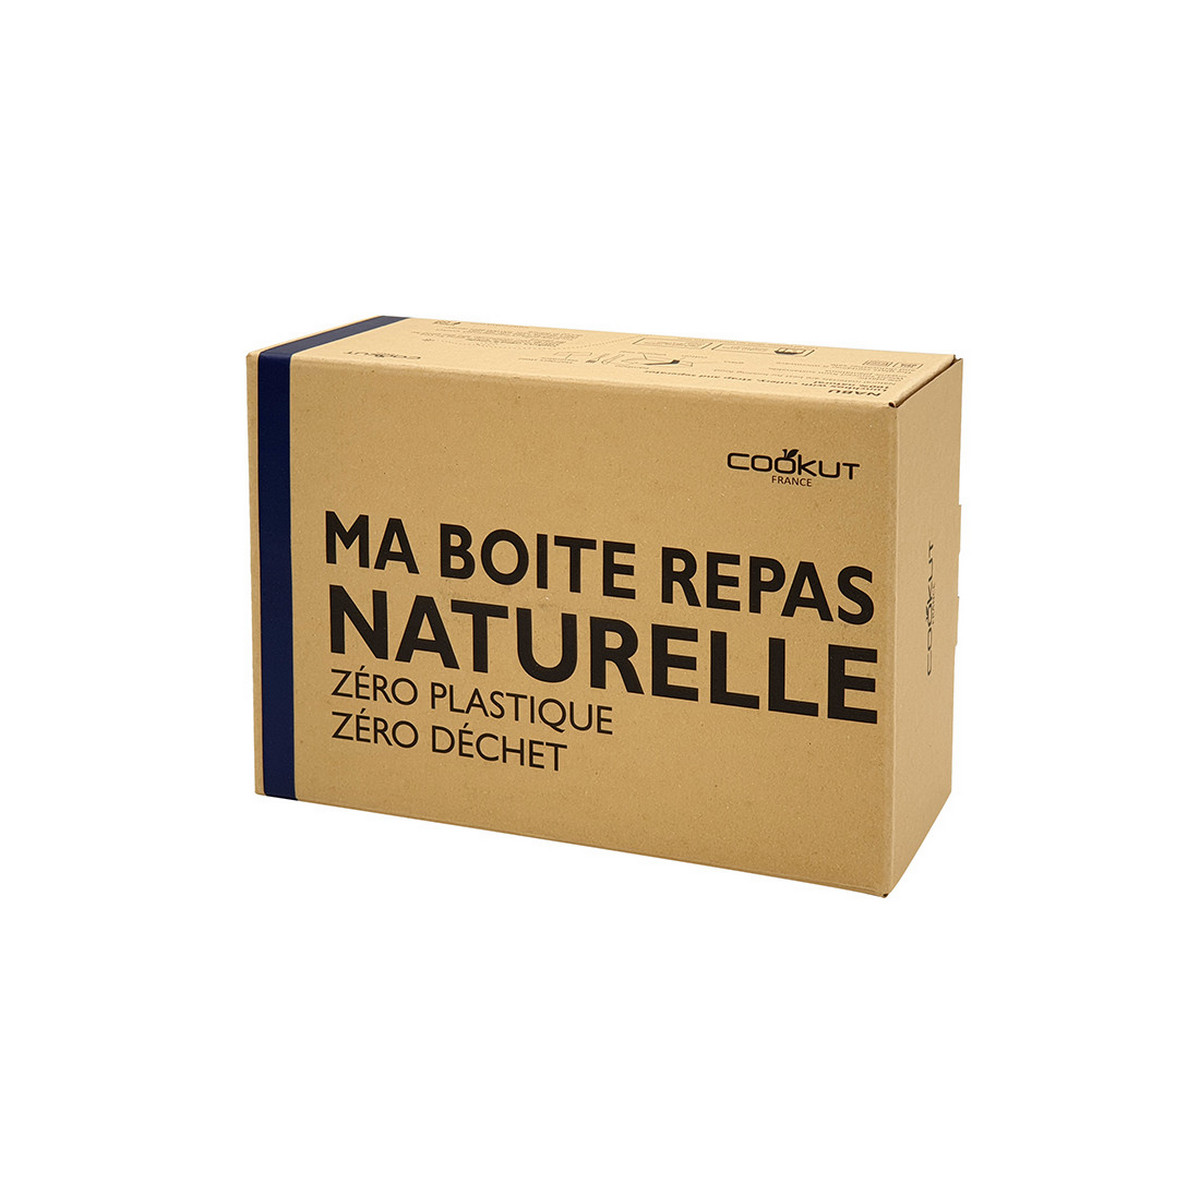 Lunch box - Boite repas nomade & naturelle – Lanière bleu foncé